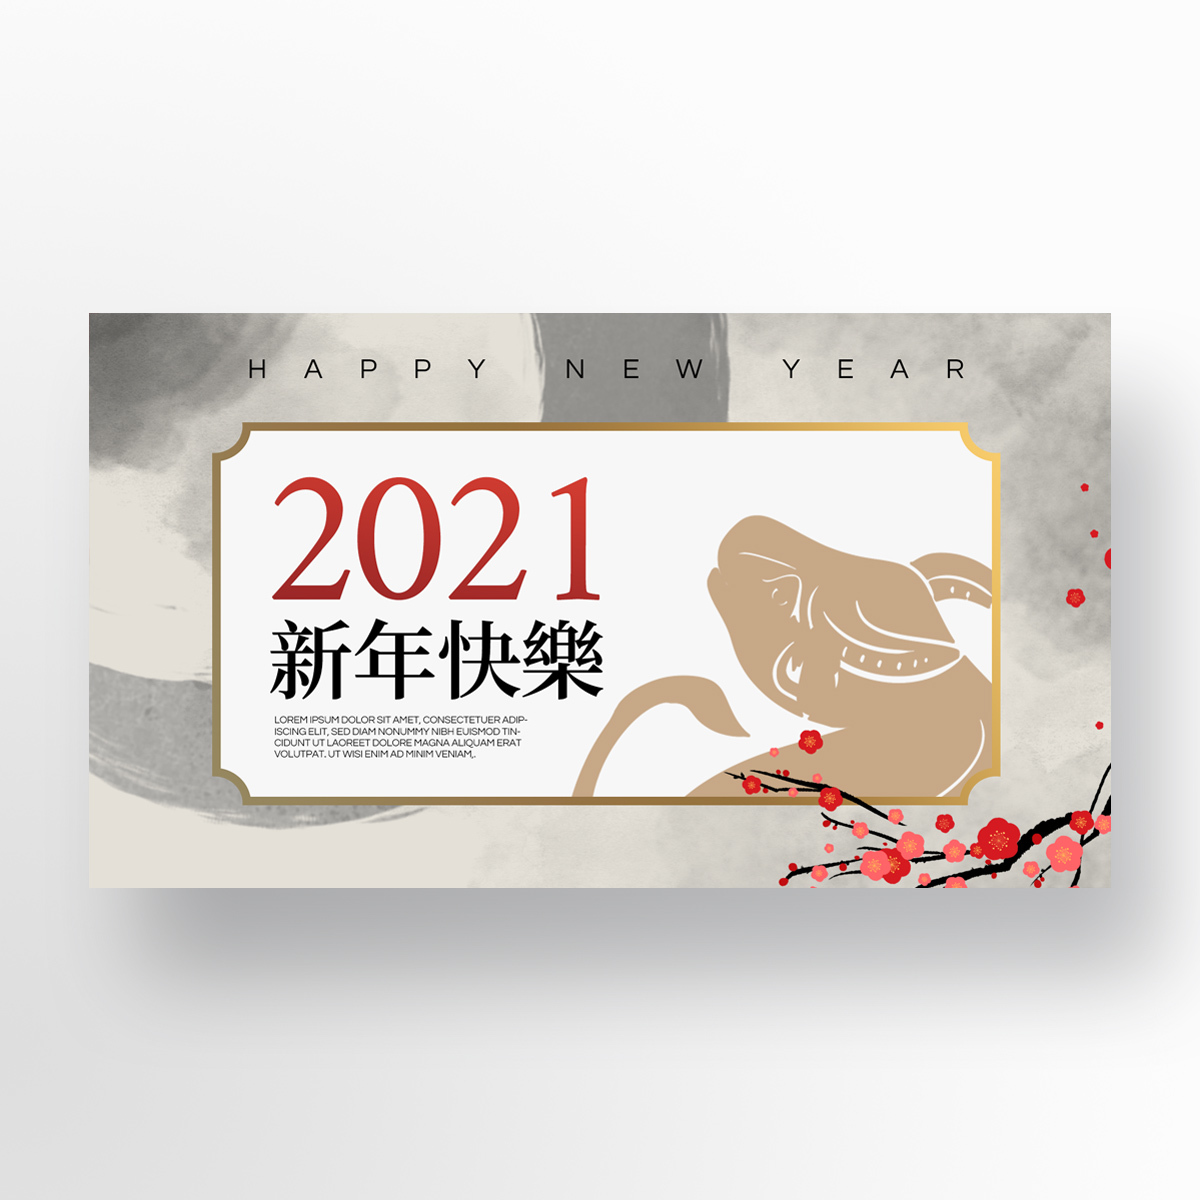 简约质感大气水墨风格传统2021新年促销banner图片